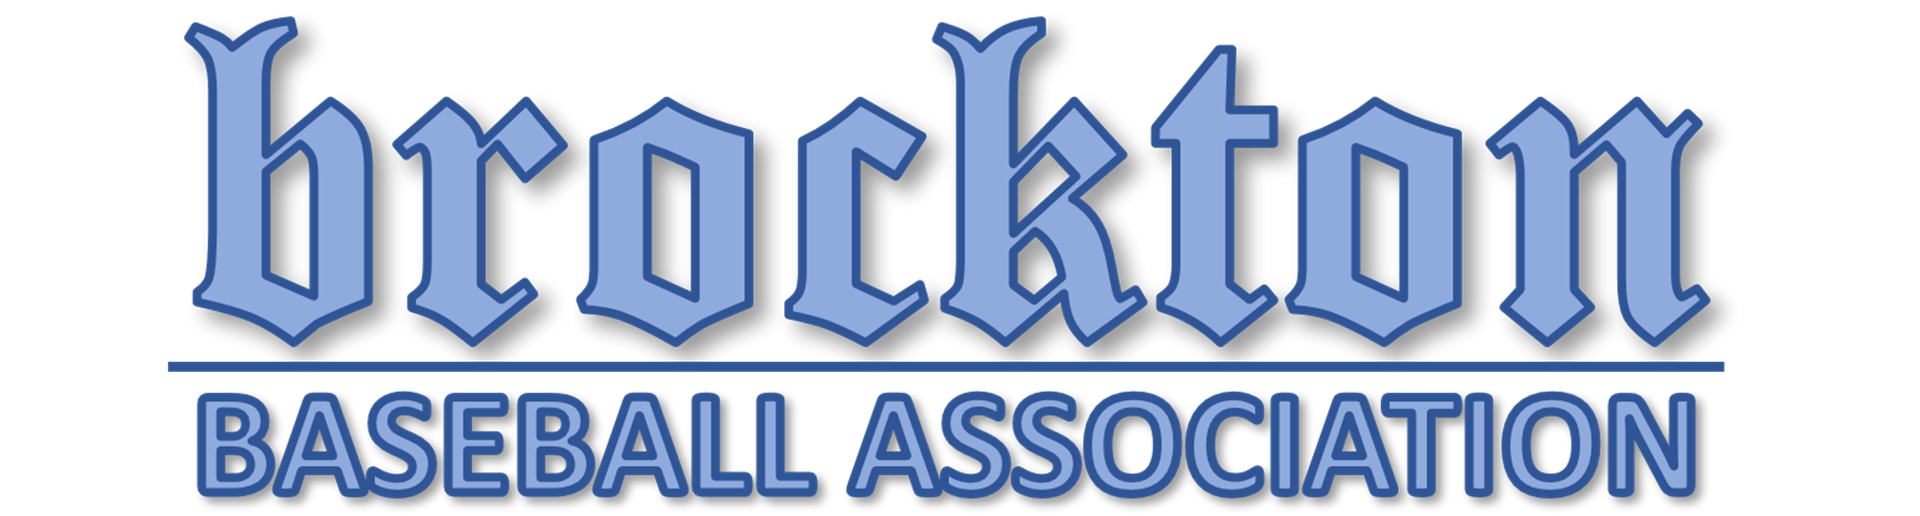 Welcome To Brockton Baseball Association